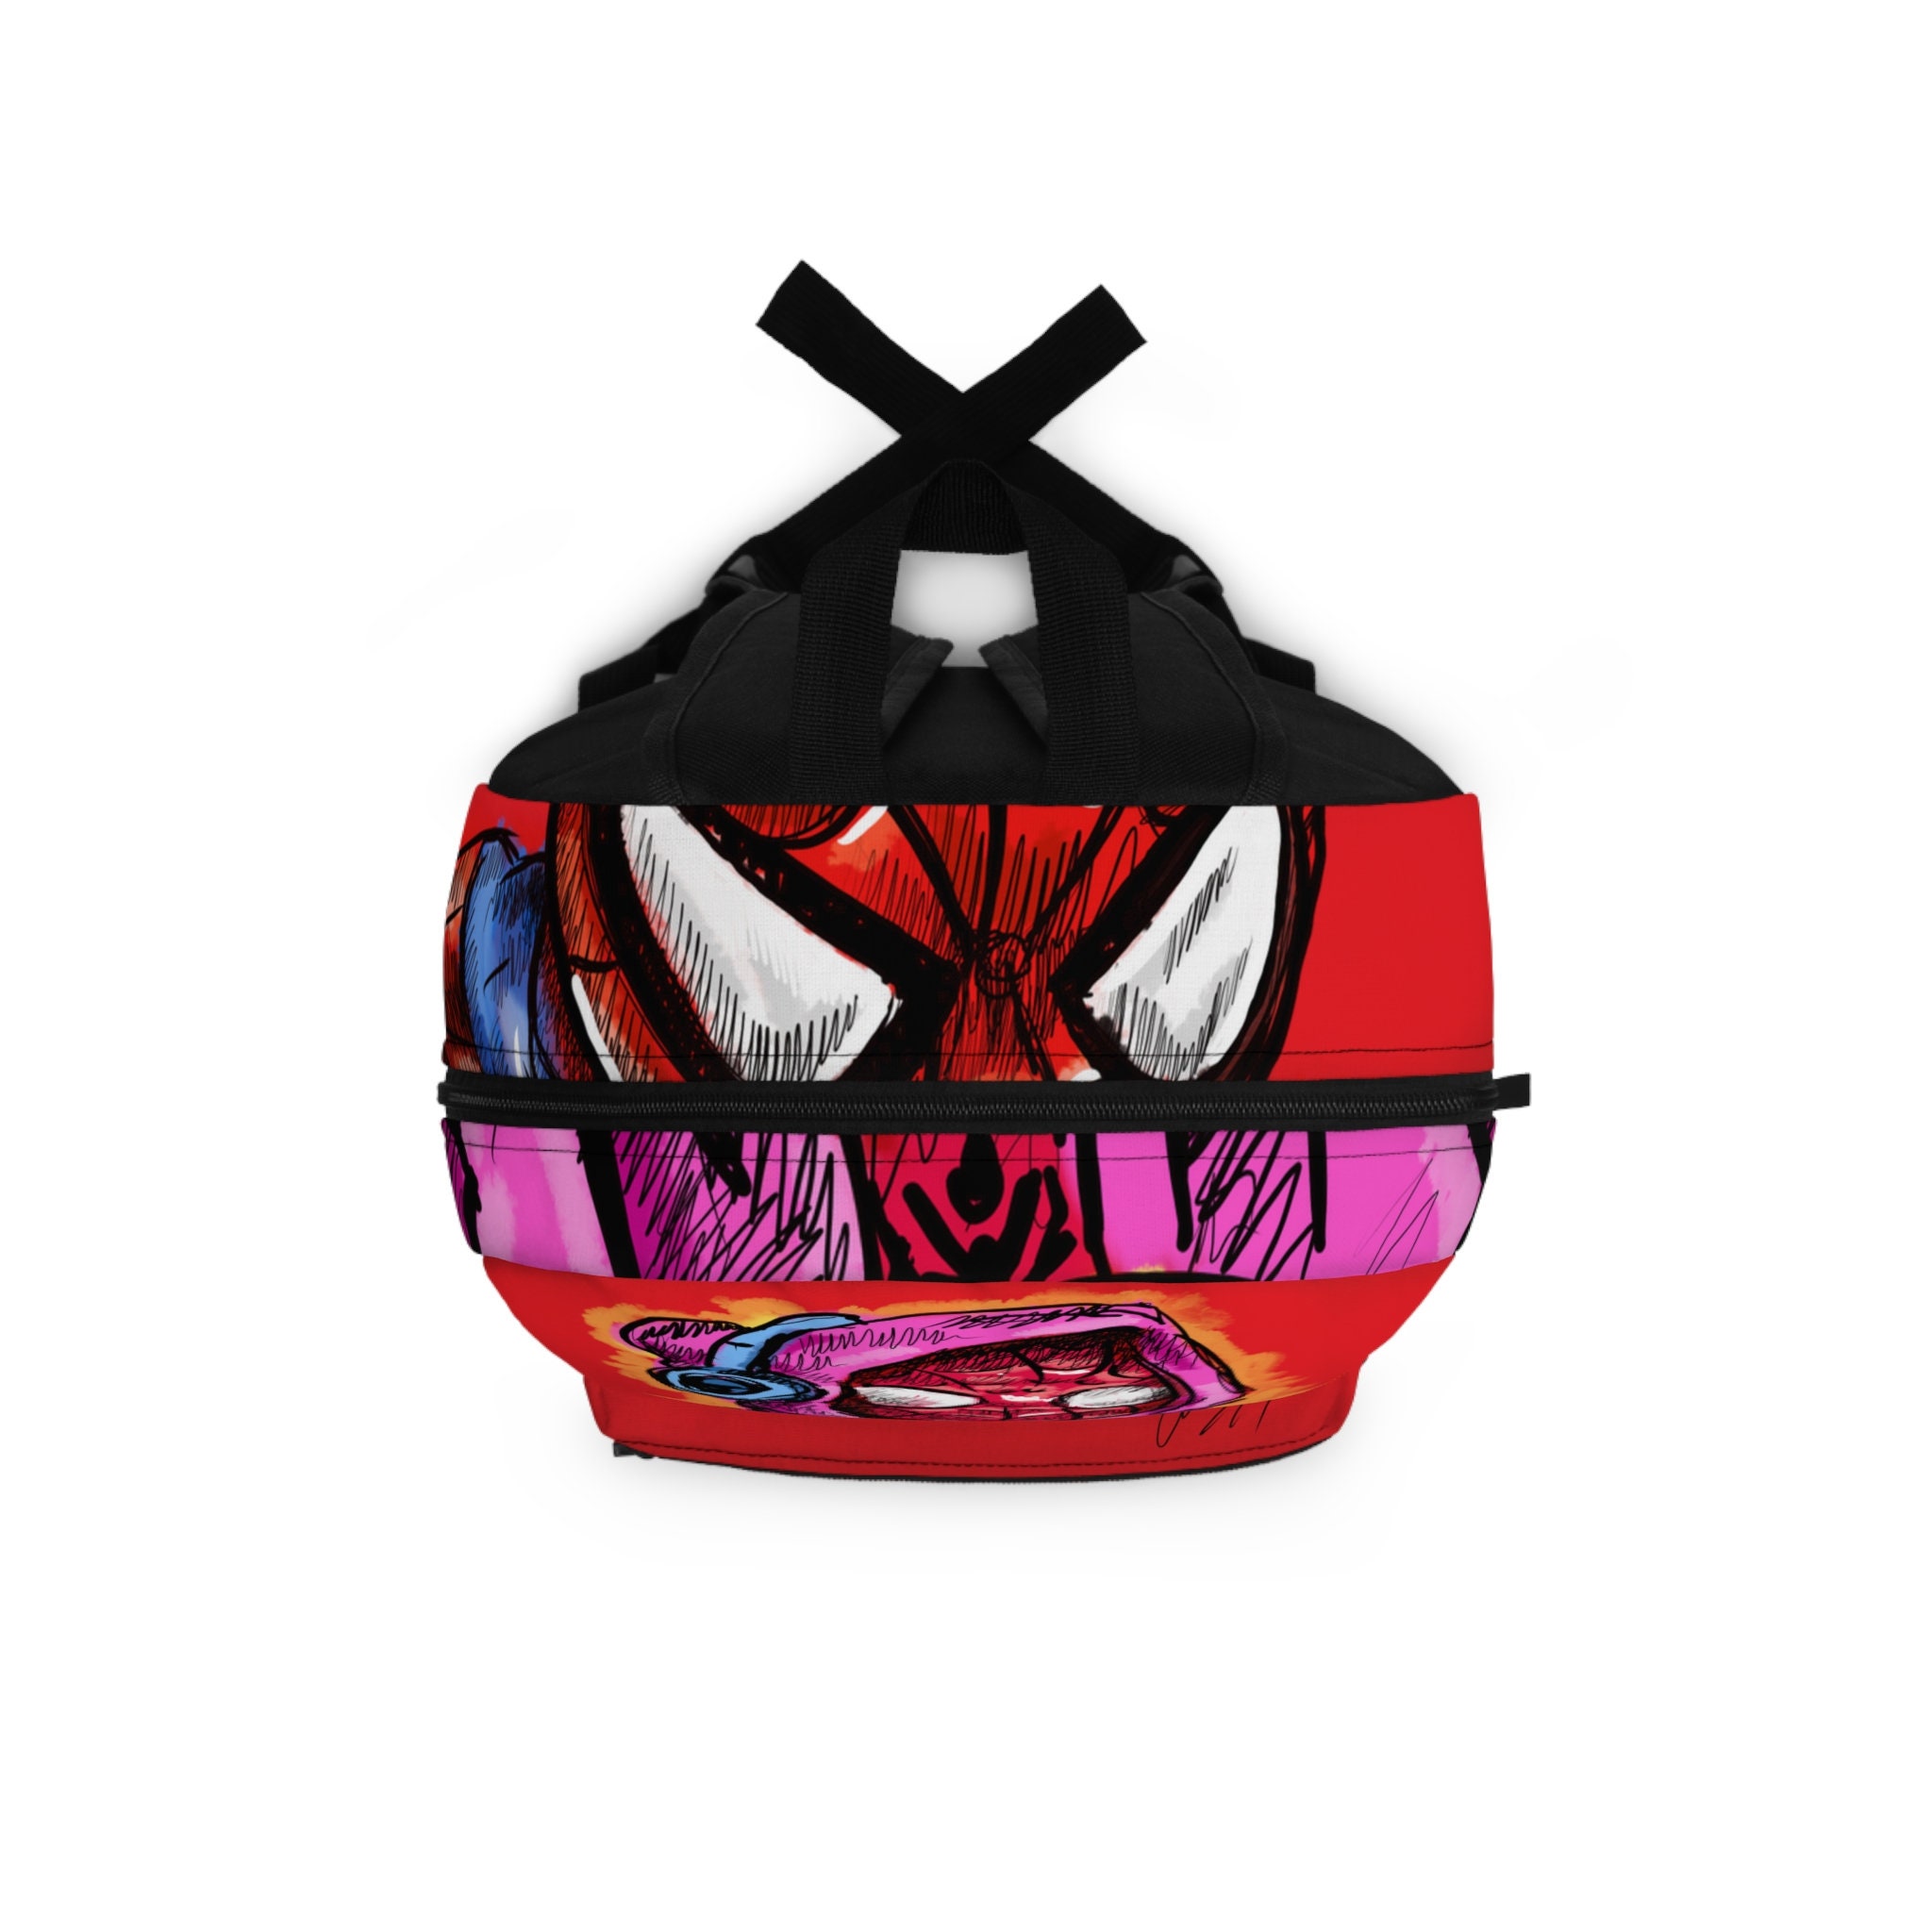 Spider Man Red Kids School Backpack, Spider man back to school Bag